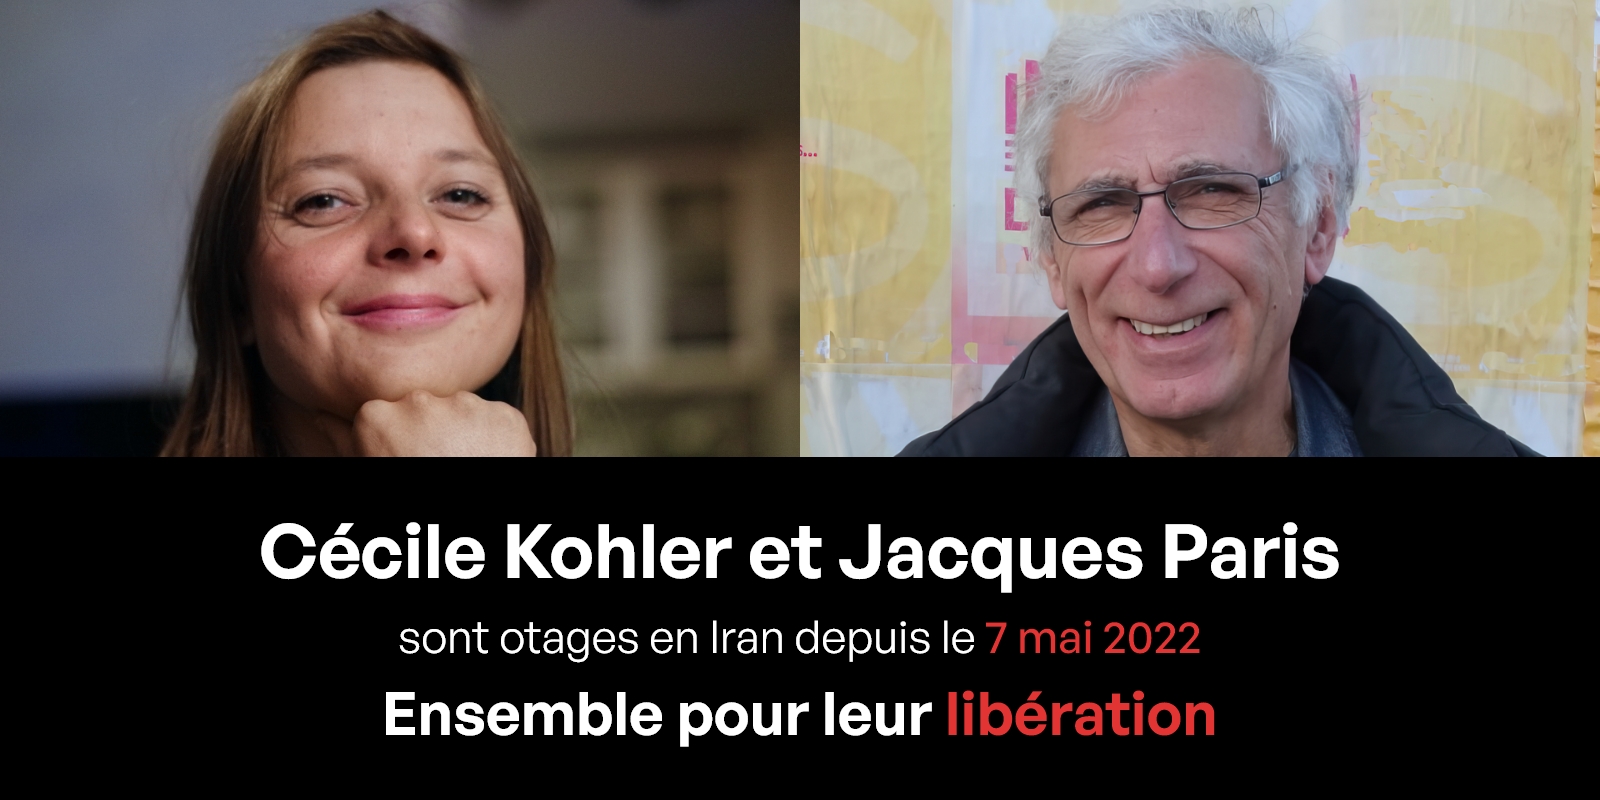 Cécile Kohler et Jacques Paris, otages en Iran depuis le 7 mai 2022